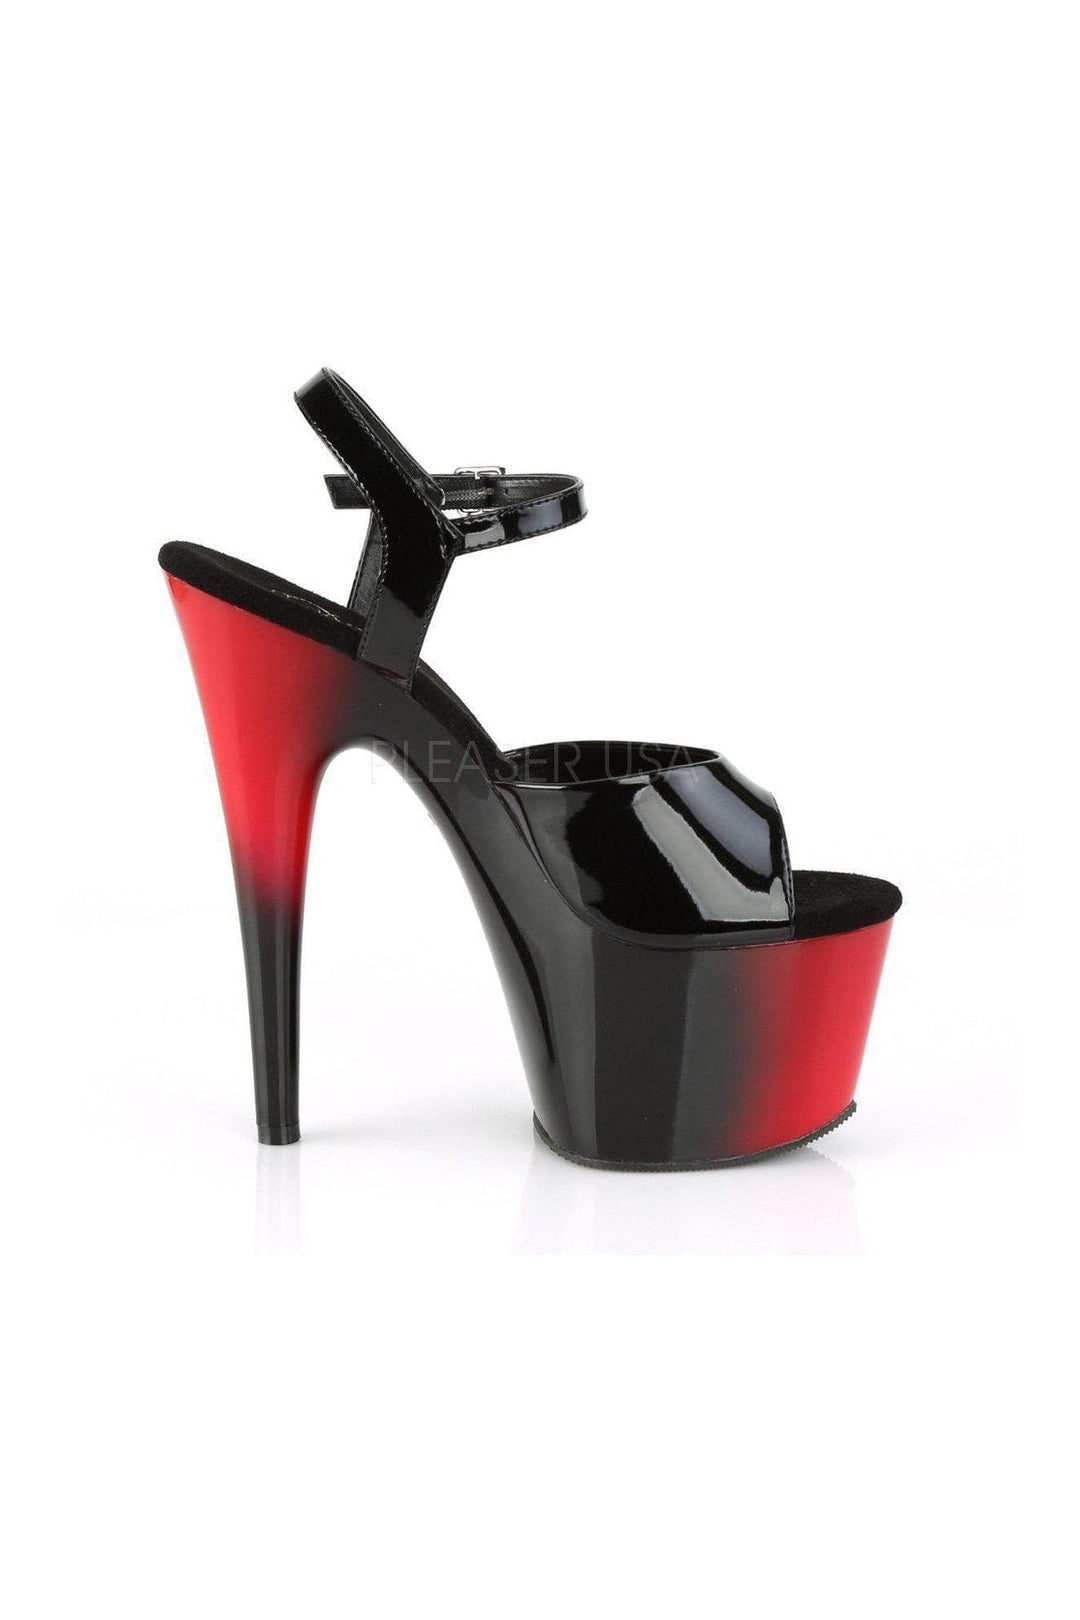 ADORE-709BR Platform Sandal | Black Patent-Pleaser-SEXYSHOES.COM